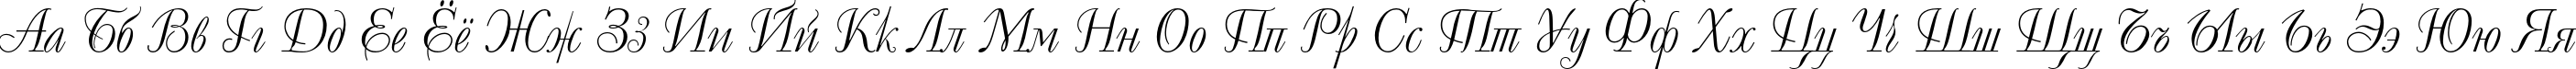 Пример написания русского алфавита шрифтом DecorC